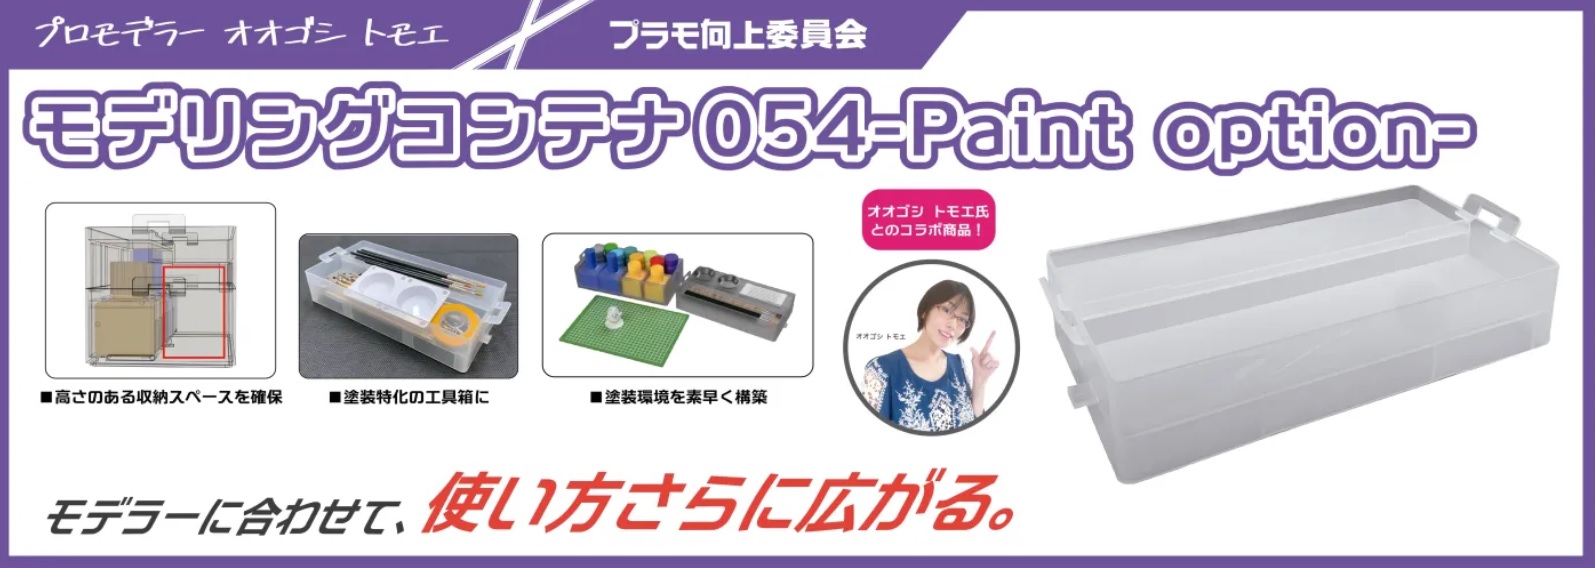 プラモ向上委員会【PMKJ024CL】モデリングコンテナ054(Paint Option)